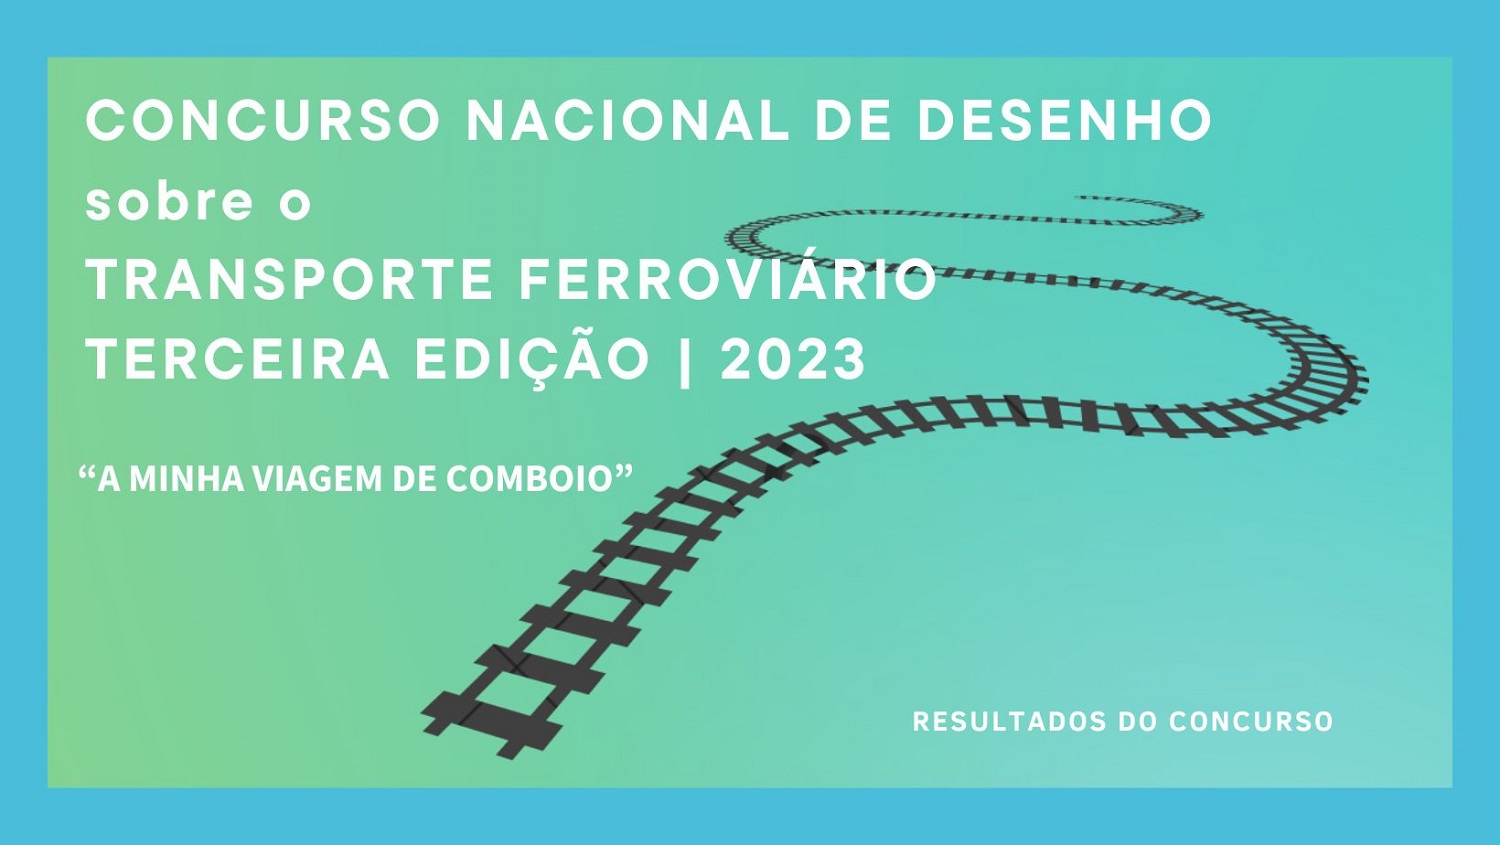 Concurso Nacional de Desenho sobre o Transporte Ferroviário 2023 – Terceira Edição “A minha viagem de comboio”